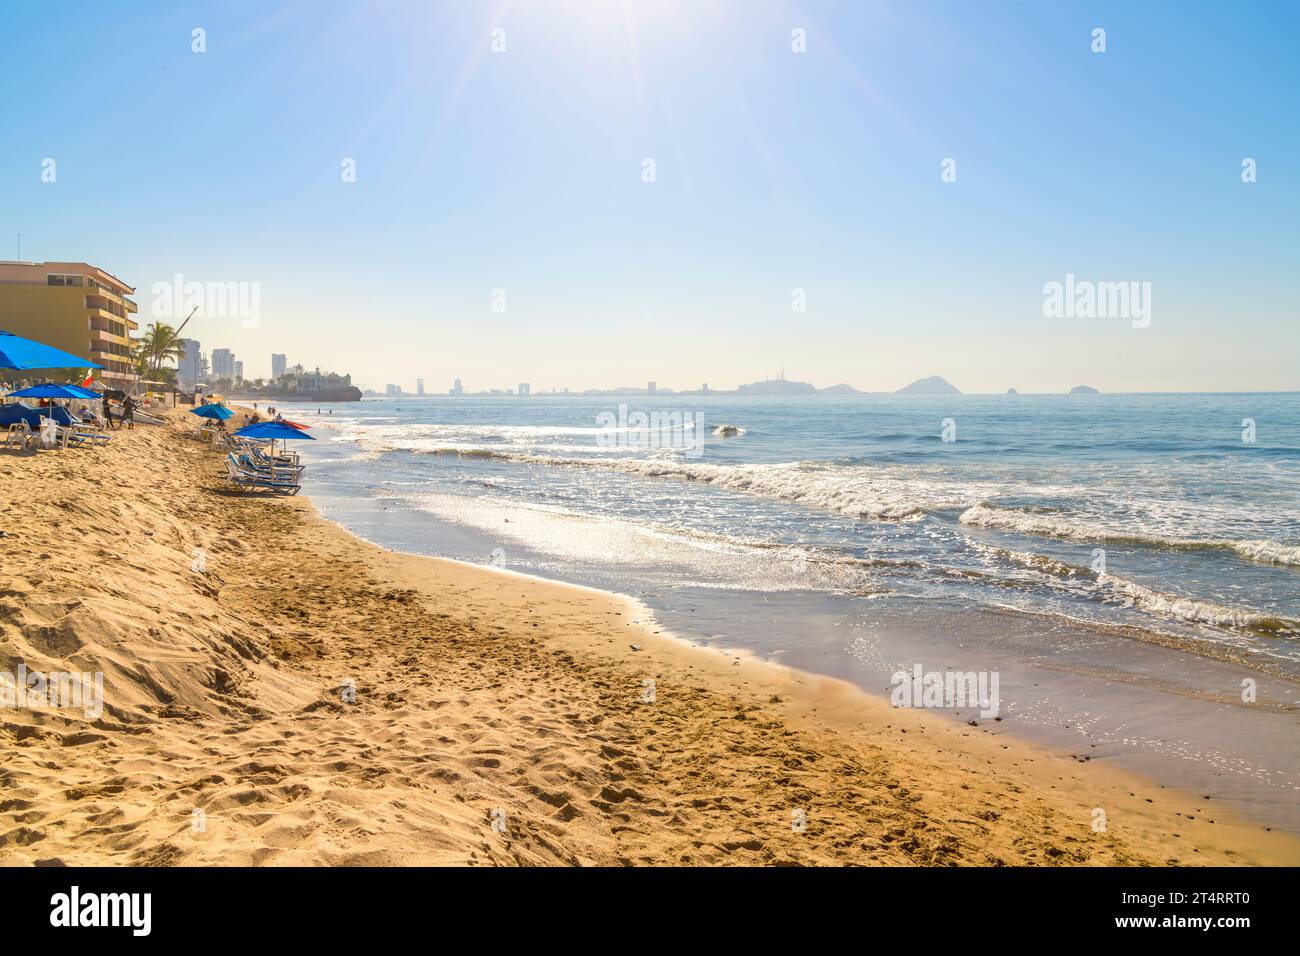 Un soleil chaud de l'après-midi met en valeur les plages de sable fin et les stations balnéaires le long de la Zona Dorado ou Golden zone de la Riviera mexicaine à Mazatlan, Mexique. Banque D'Images